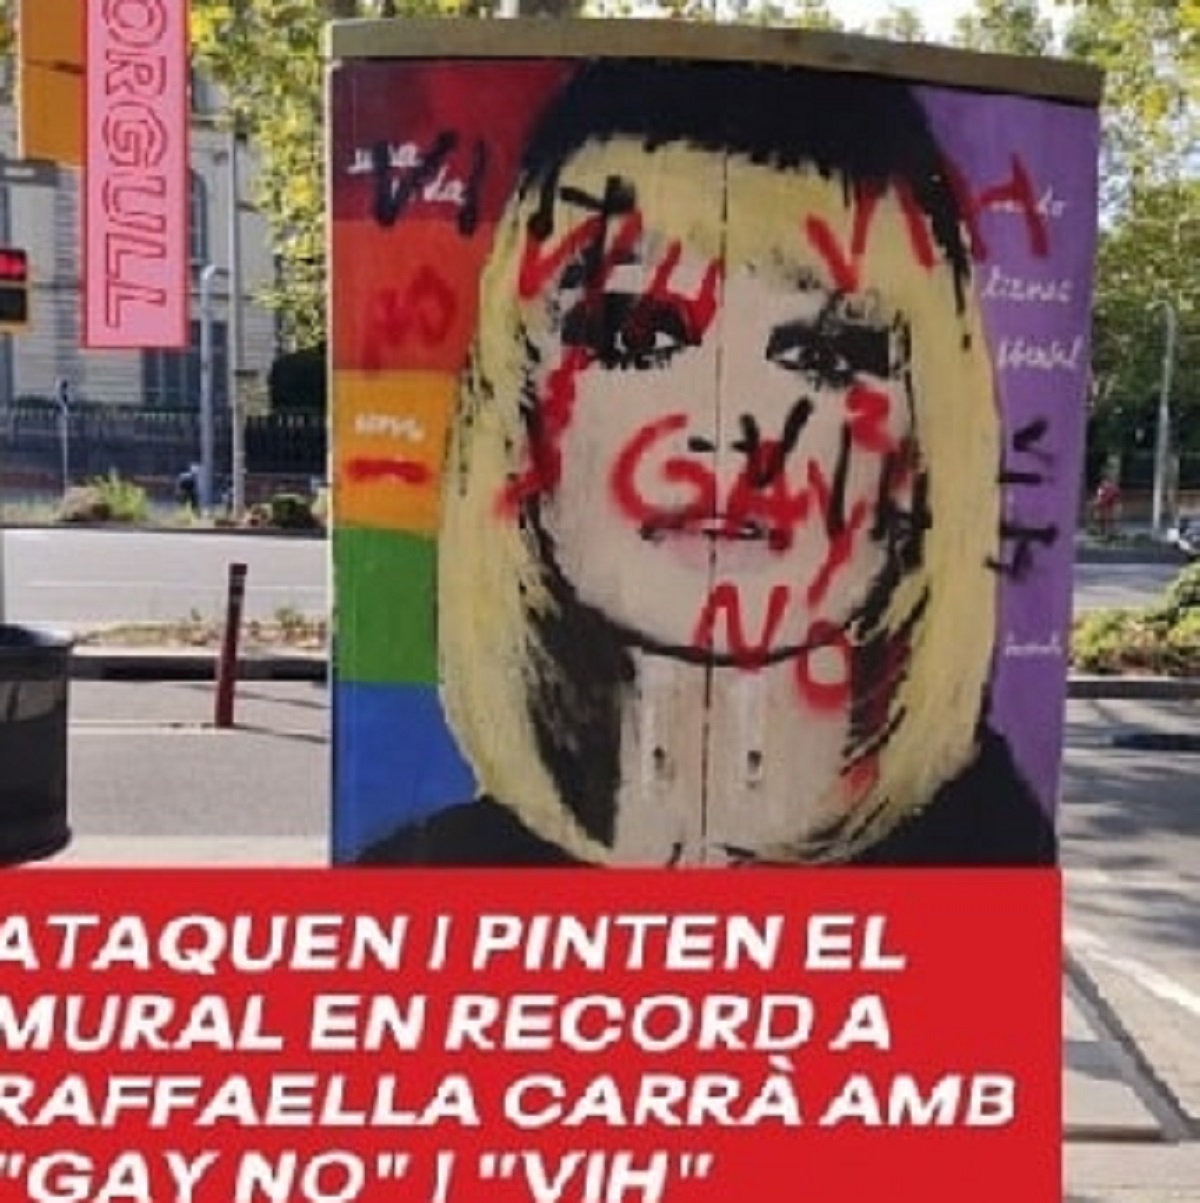 Raffaella Carrà Barcellona murale vandalizzato 